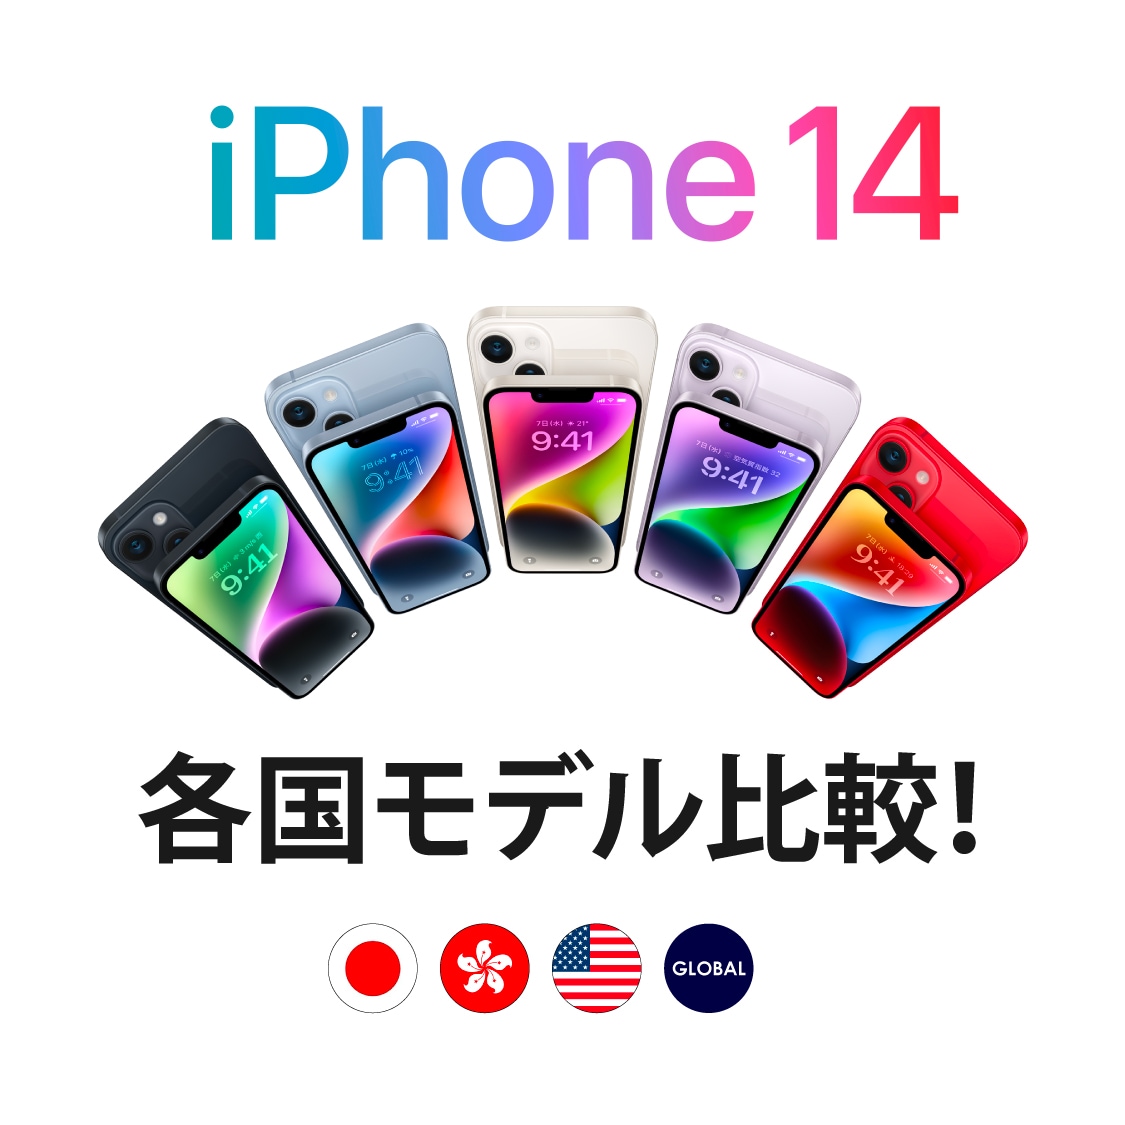 iPhone 14、iPhone 14 Plus、iPhone 14 Pro、iPhone 14 Pro Max 各国